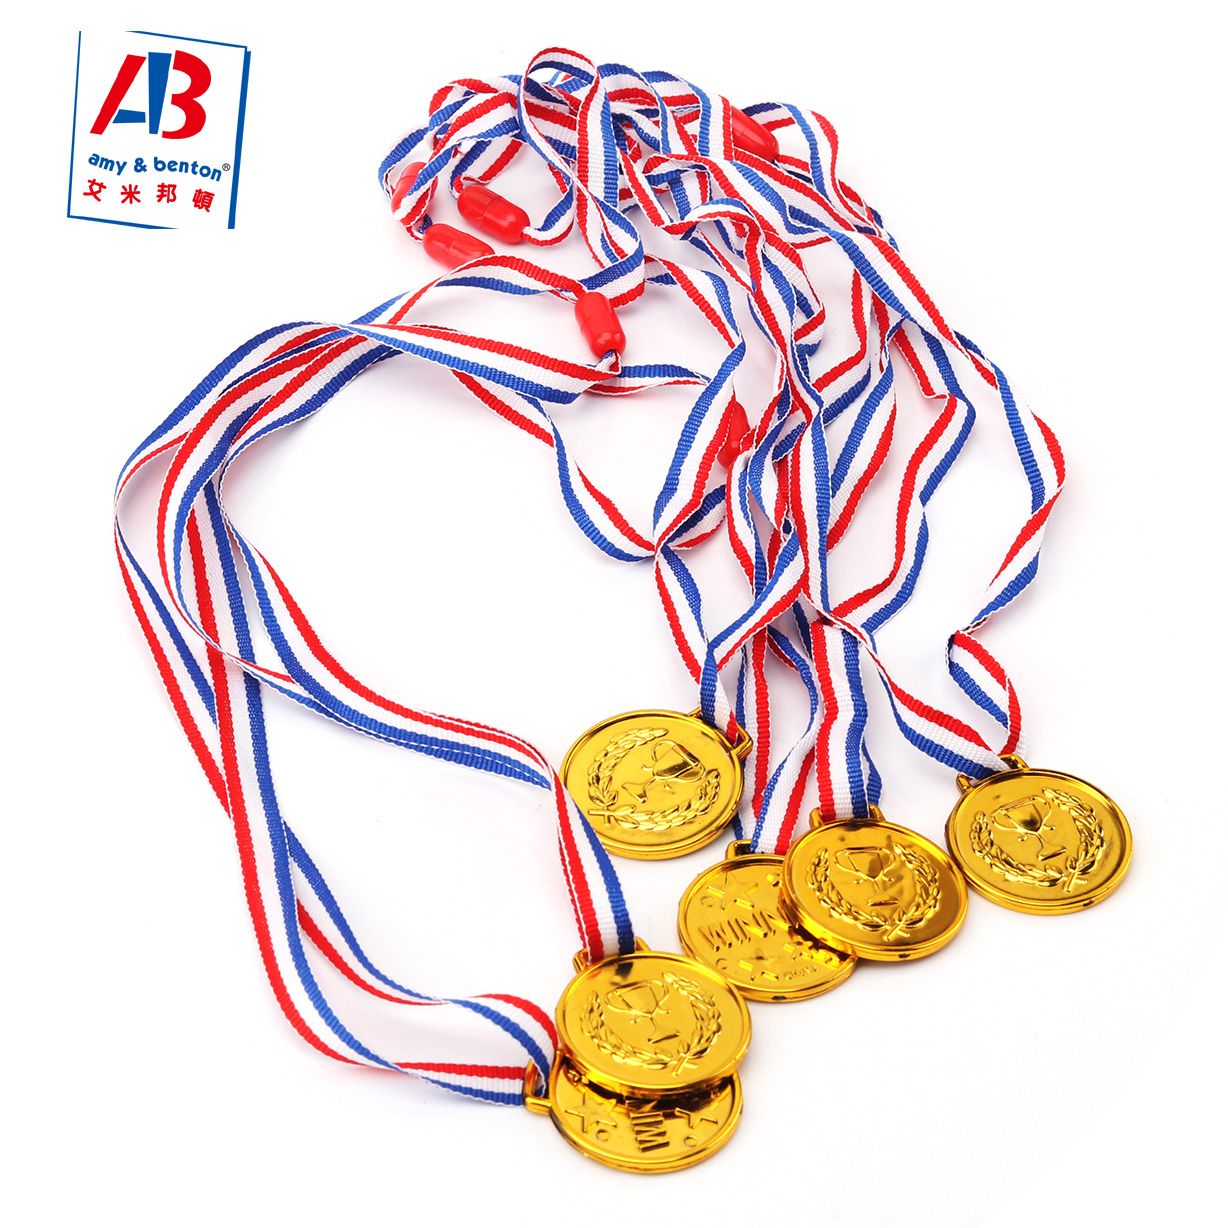 6 Stück Goldmedaillen für Kinder Medaillen für Auszeichnungen Kunststoff-Gewinner-Medaillen für Kinder